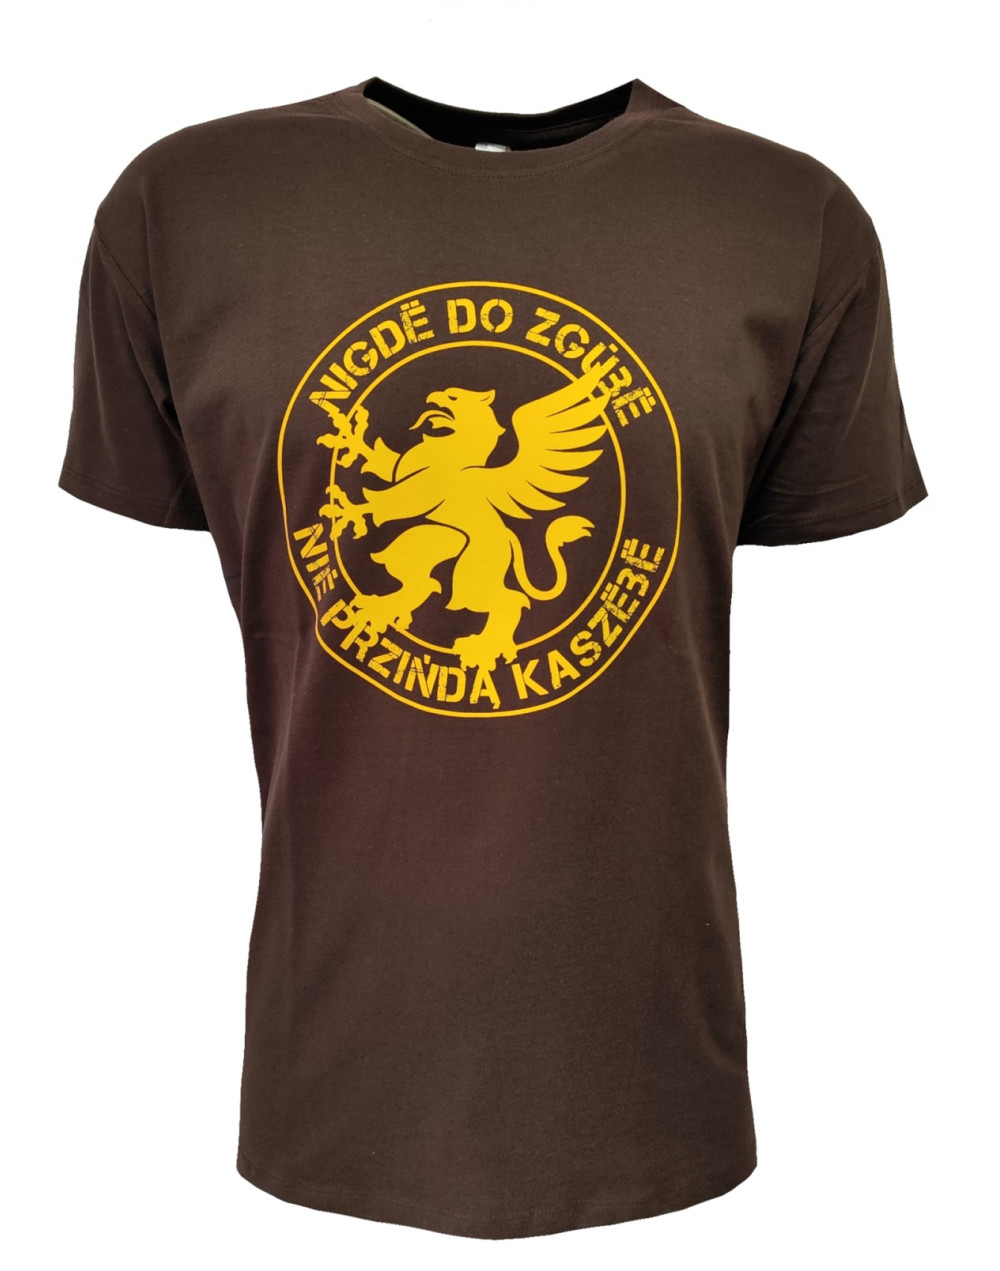 T-shirt męski KASZEBE BRĄZ koszulka bawełna M-XXL